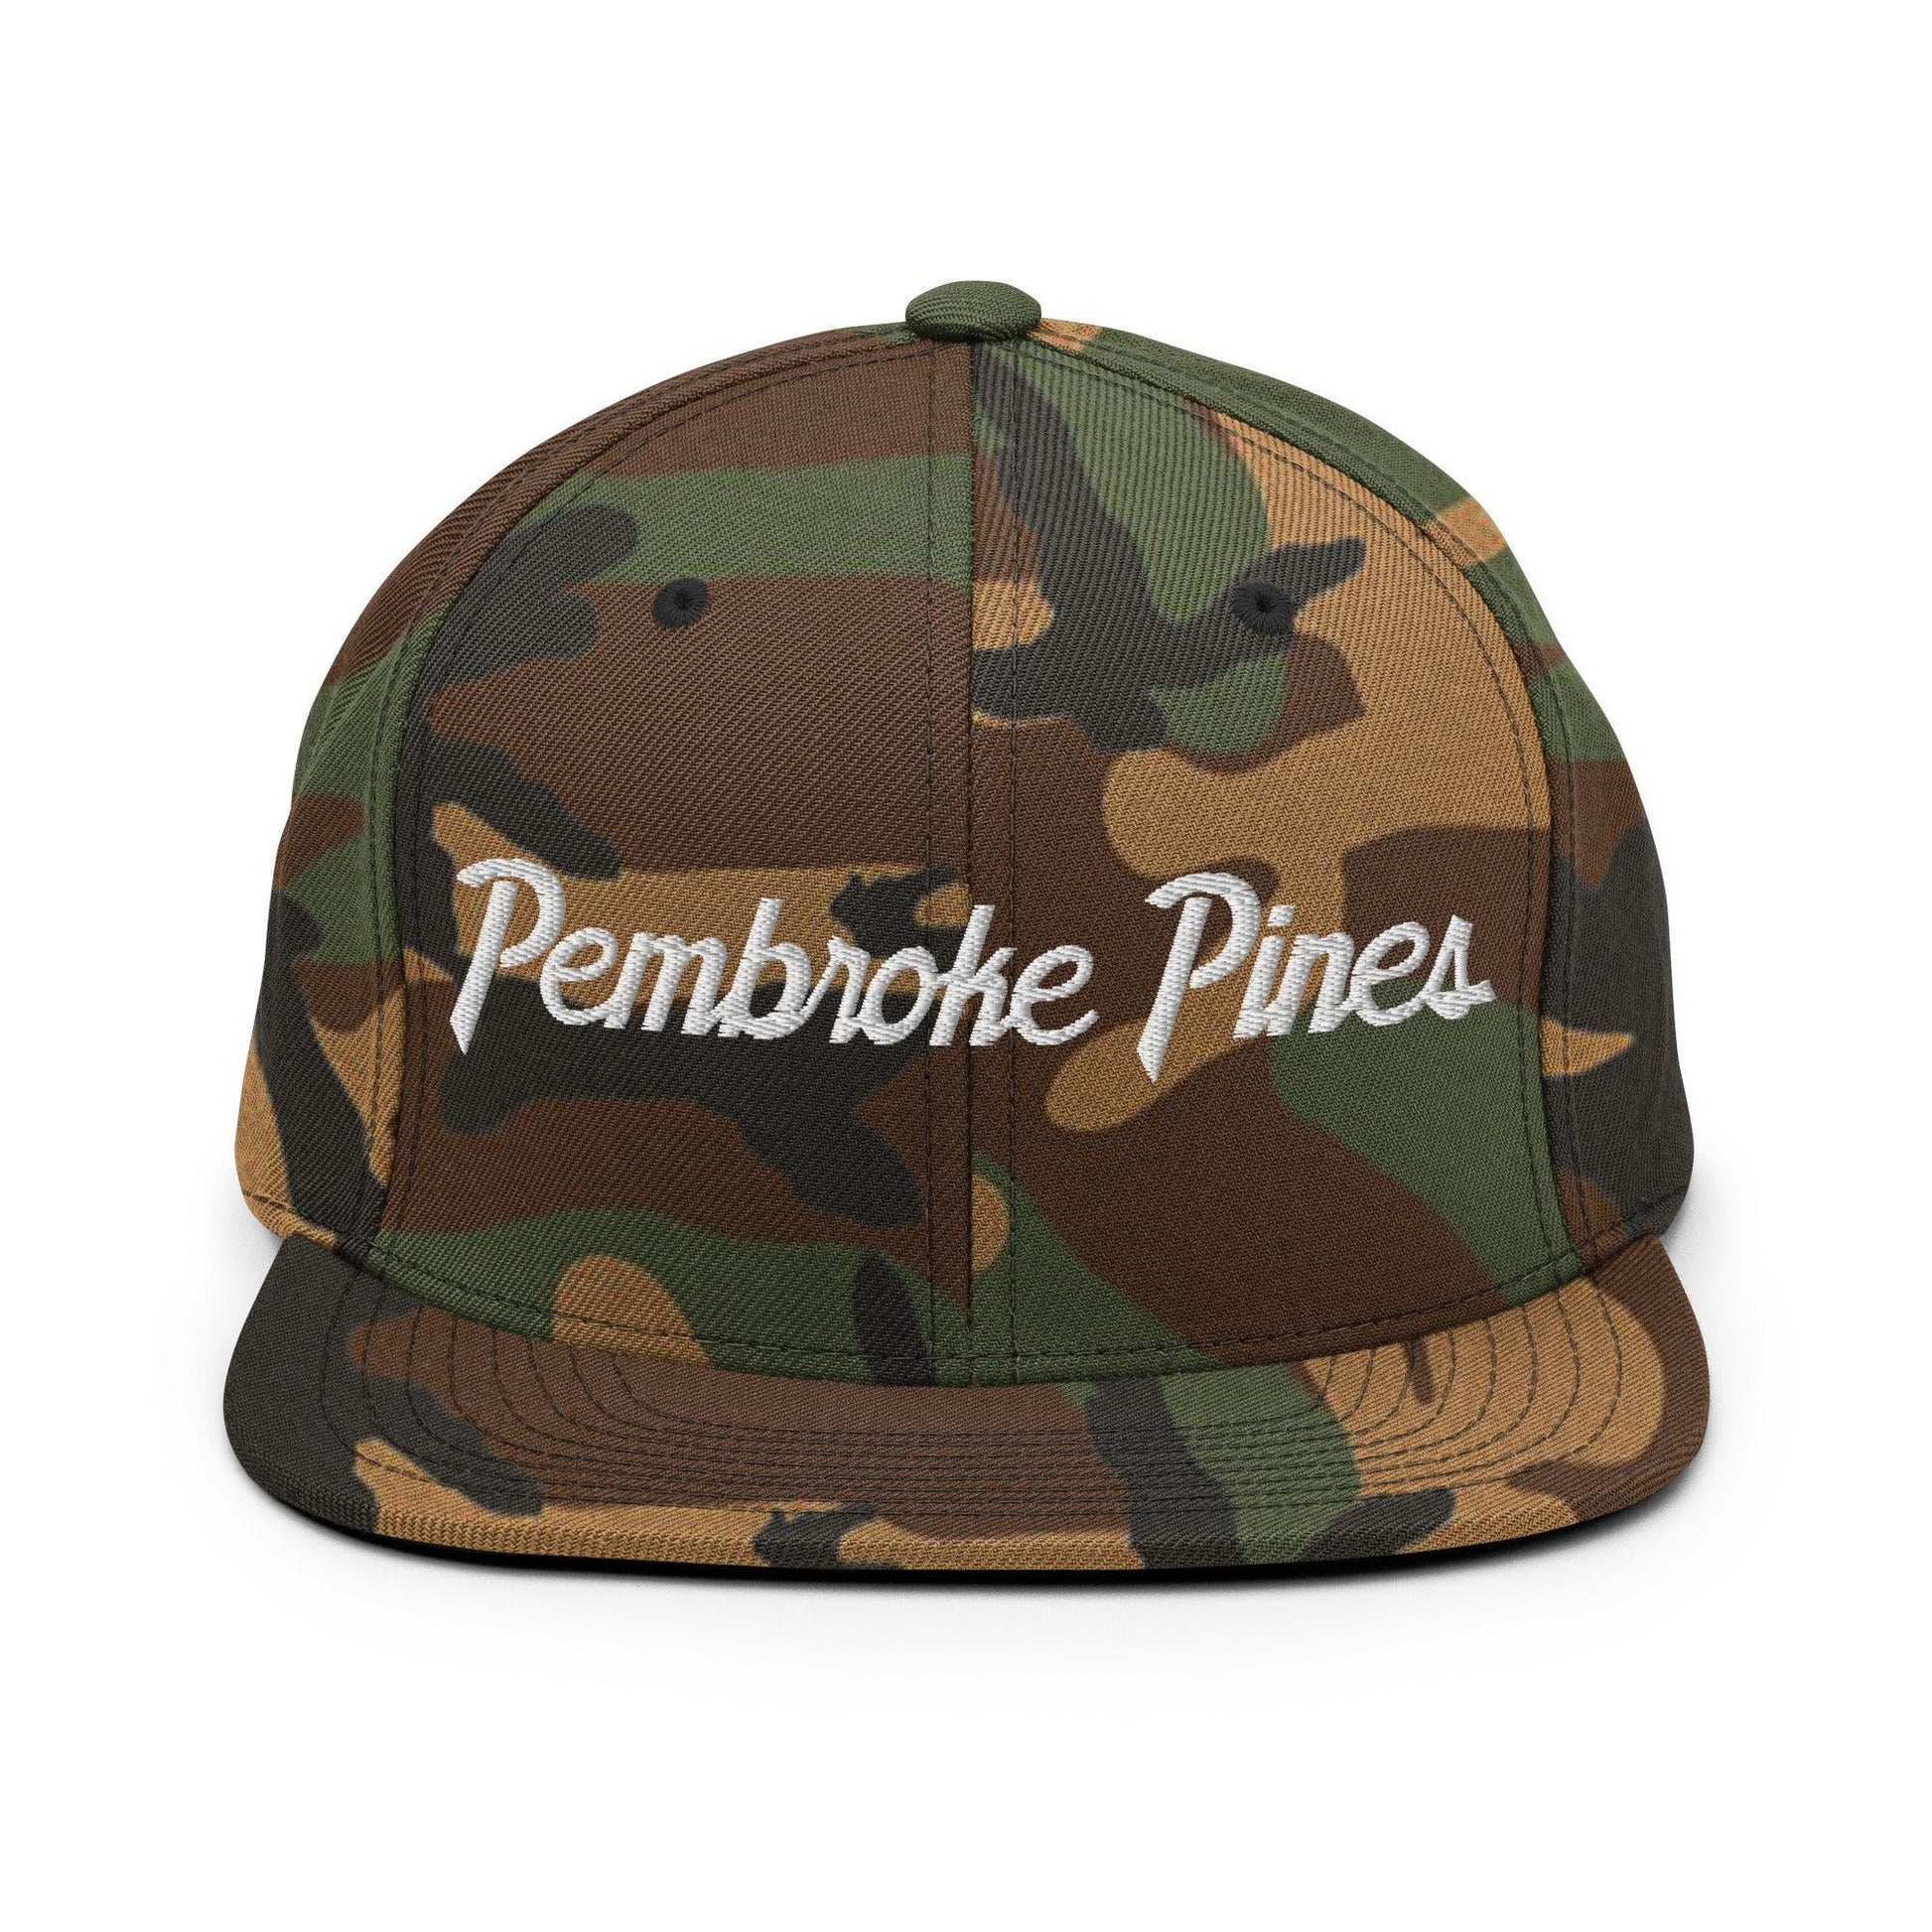 Pembroke Pines Script Snapback Hat Green Camo